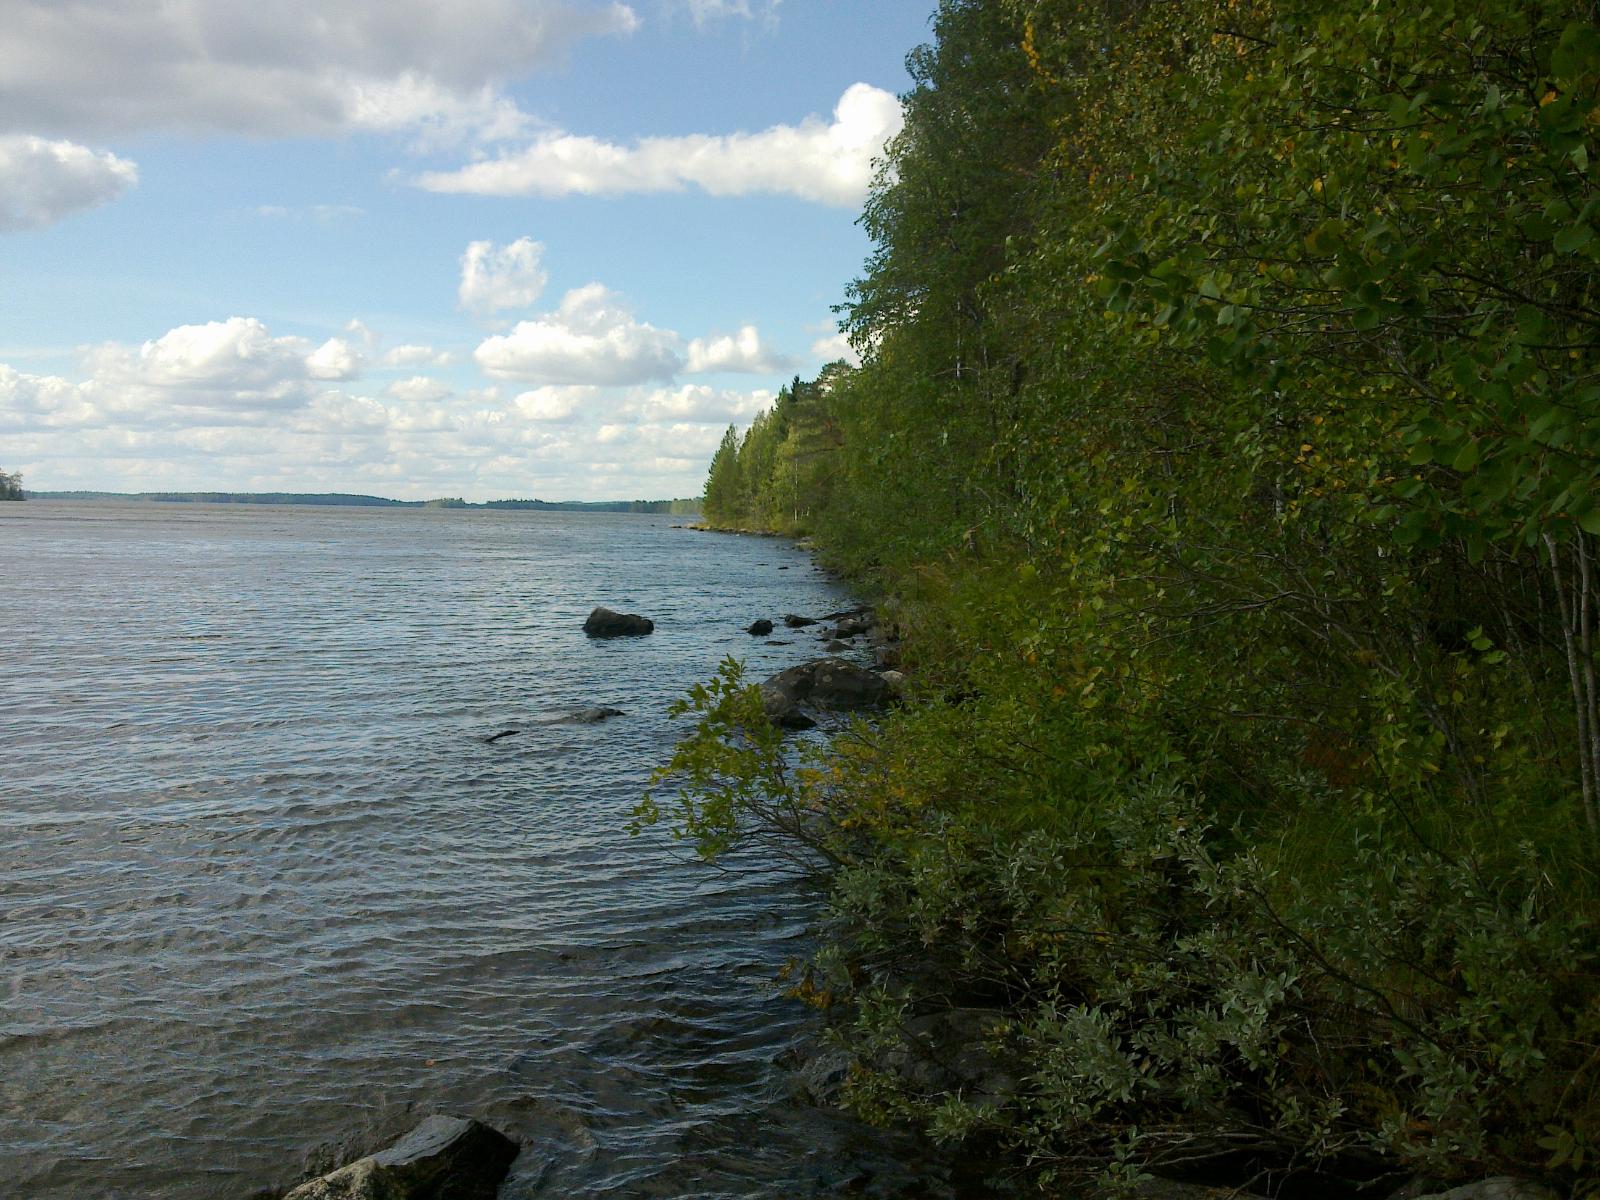 Kesäinen metsä reunustaa järveä. Rantavedessä on kiviä ja järvenselkä jatkuu horisonttiin.